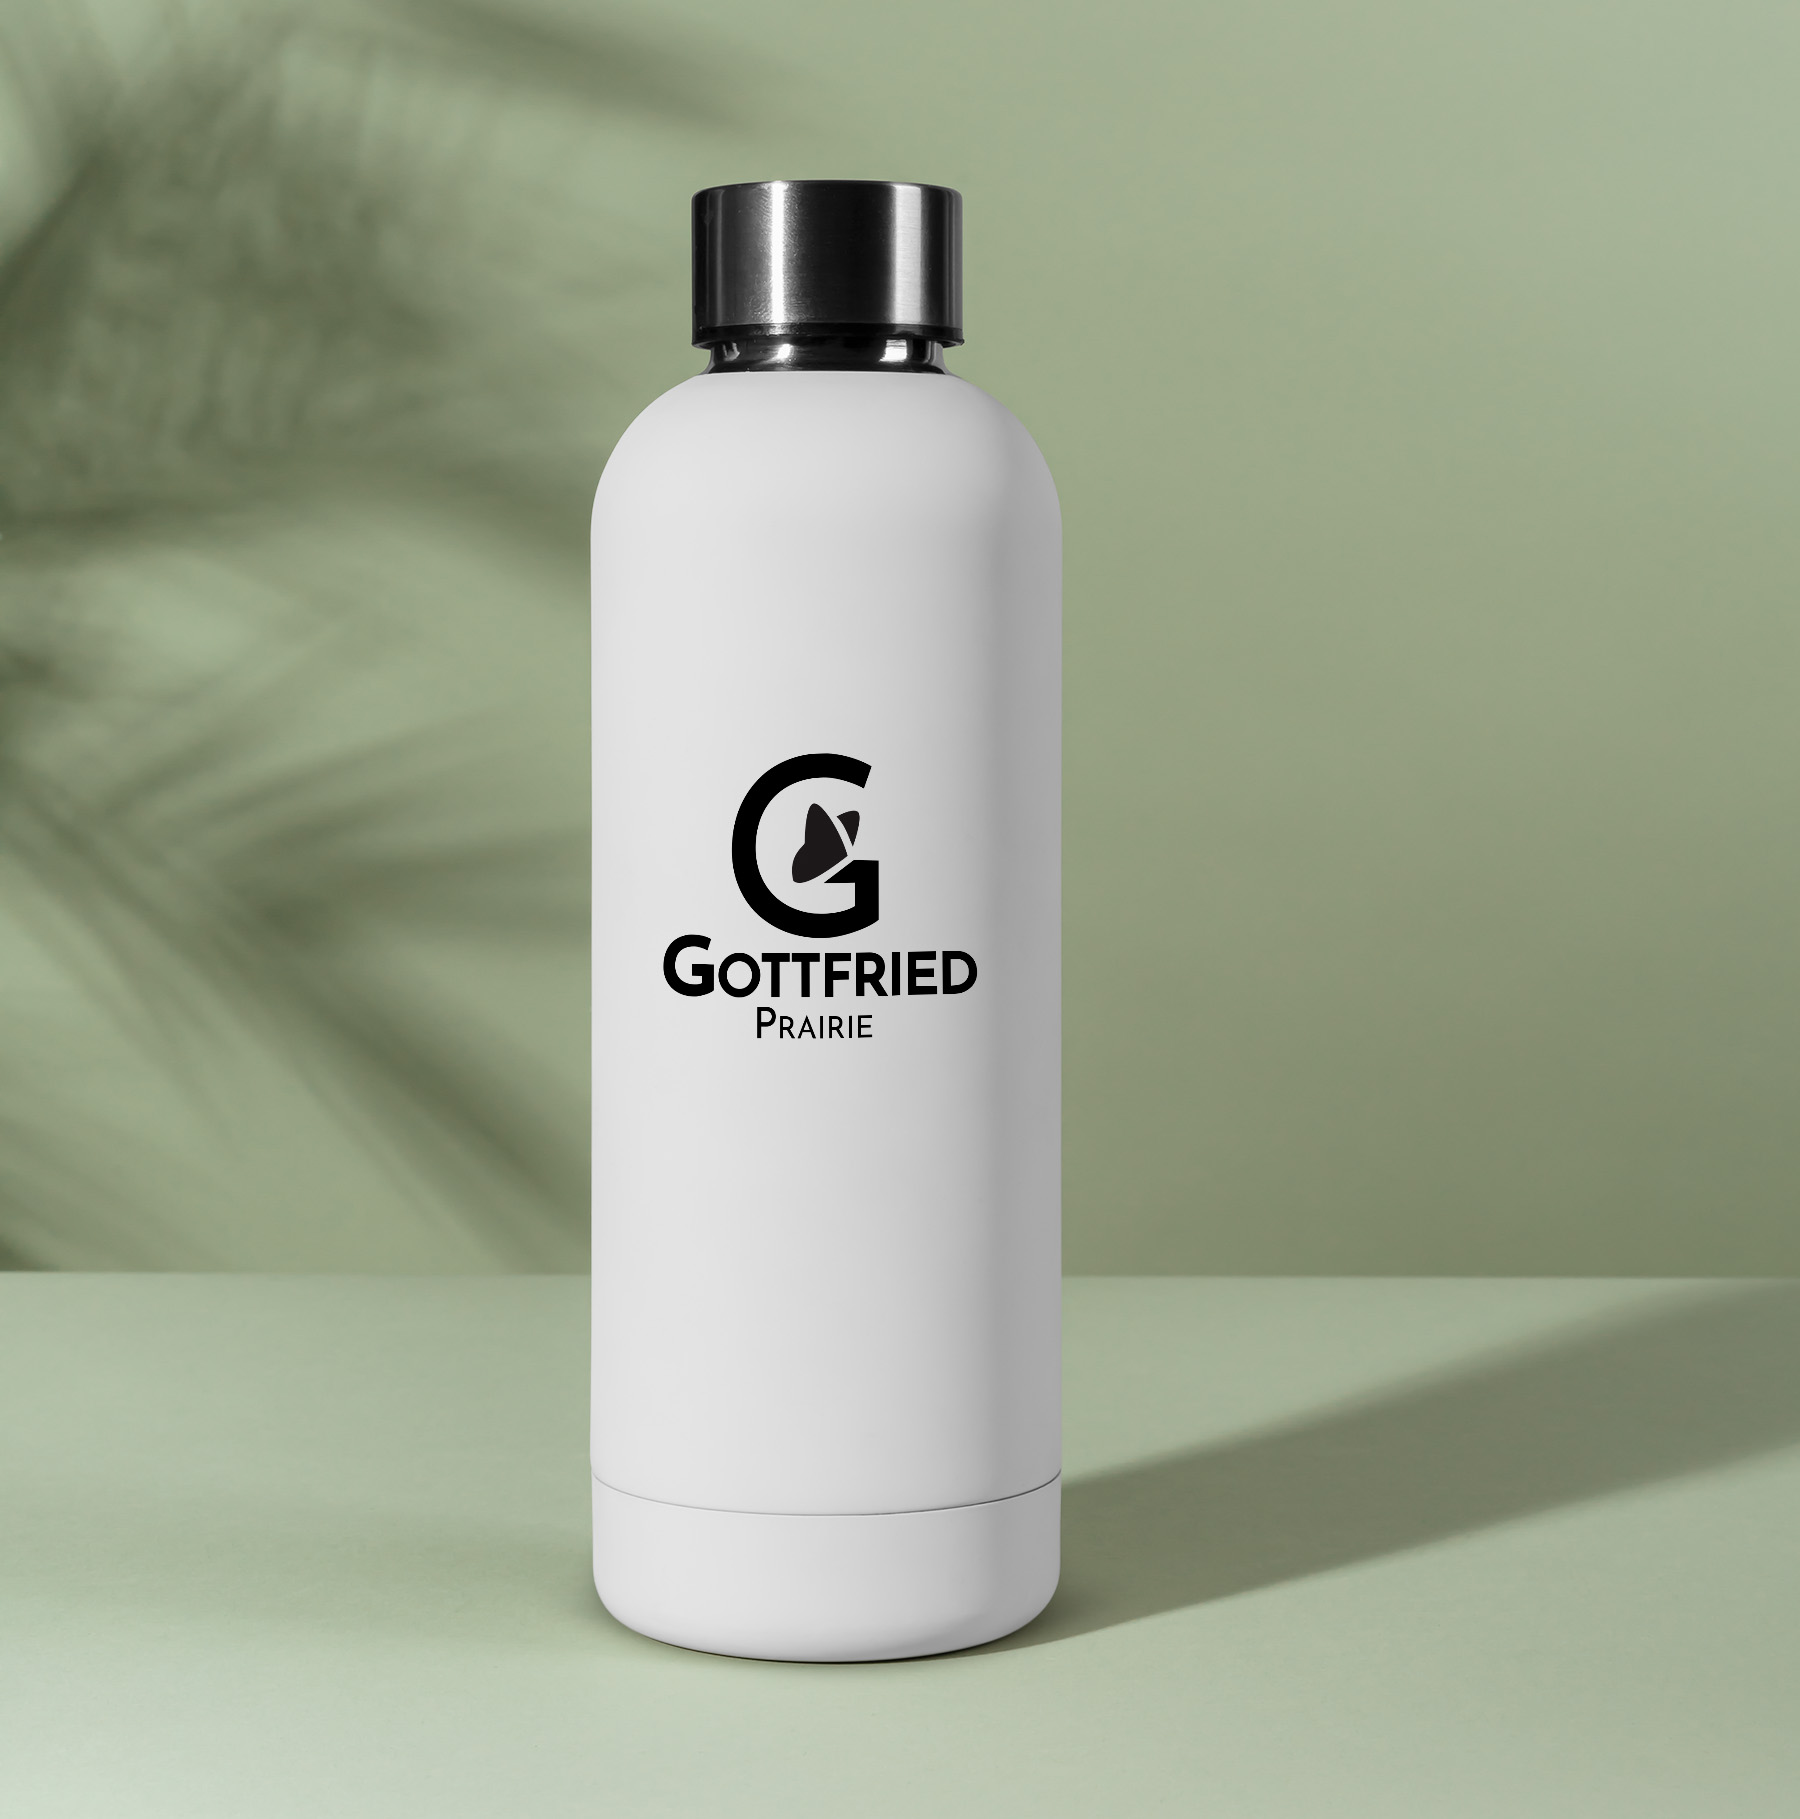 Gottfried Prairie water bottle